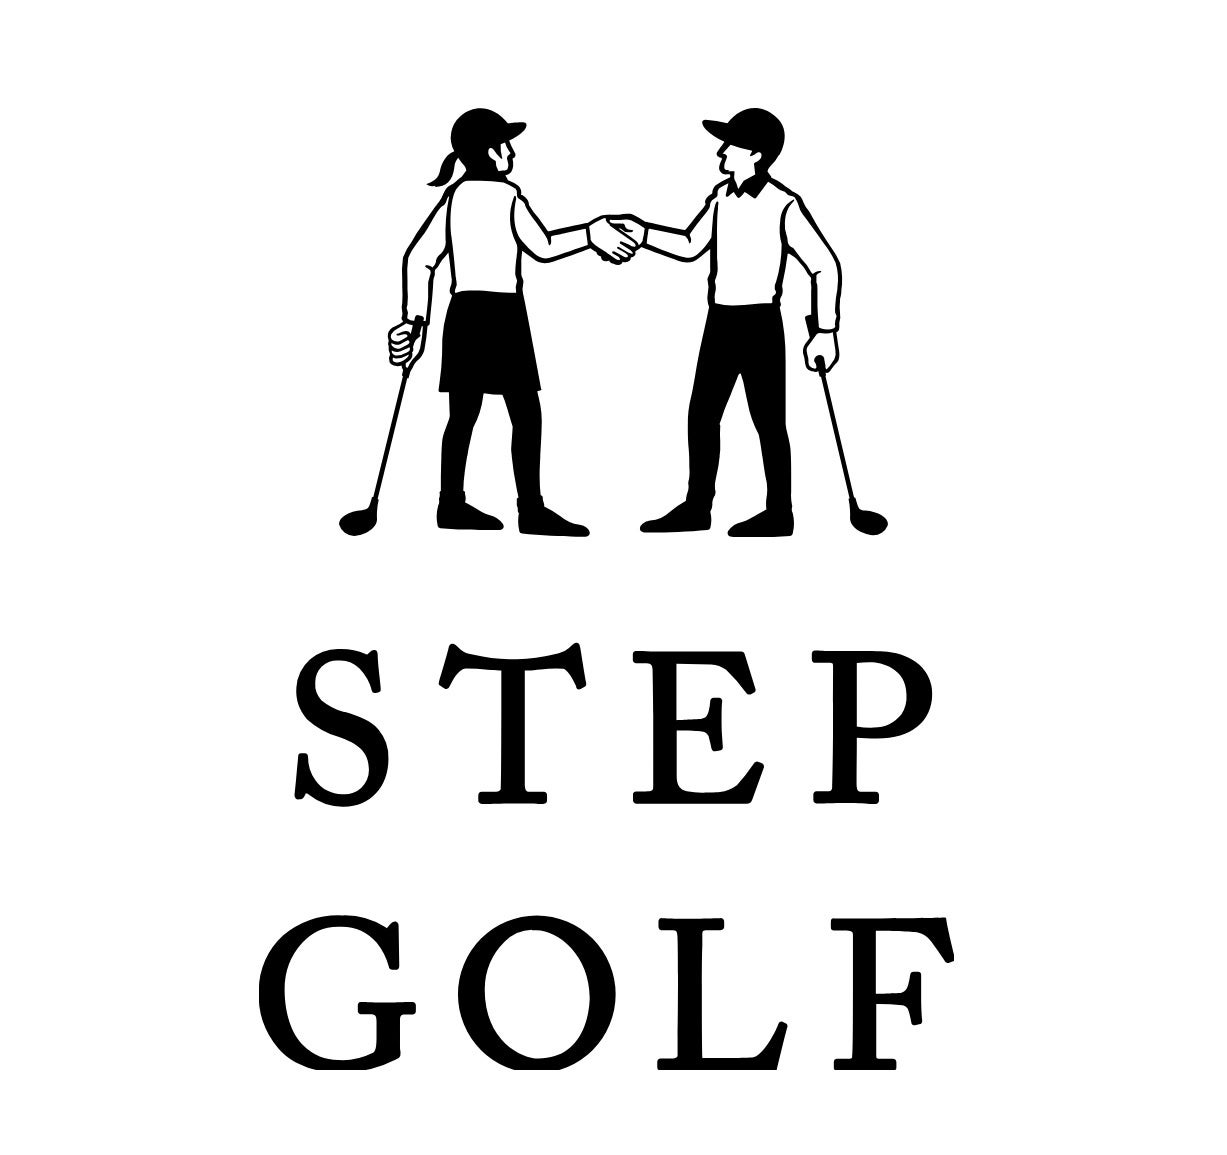 全国に110店舗超えのインドアゴルフスクール「ステップゴルフ」荒川区内2店舗目となる『ステップゴルフプラス...